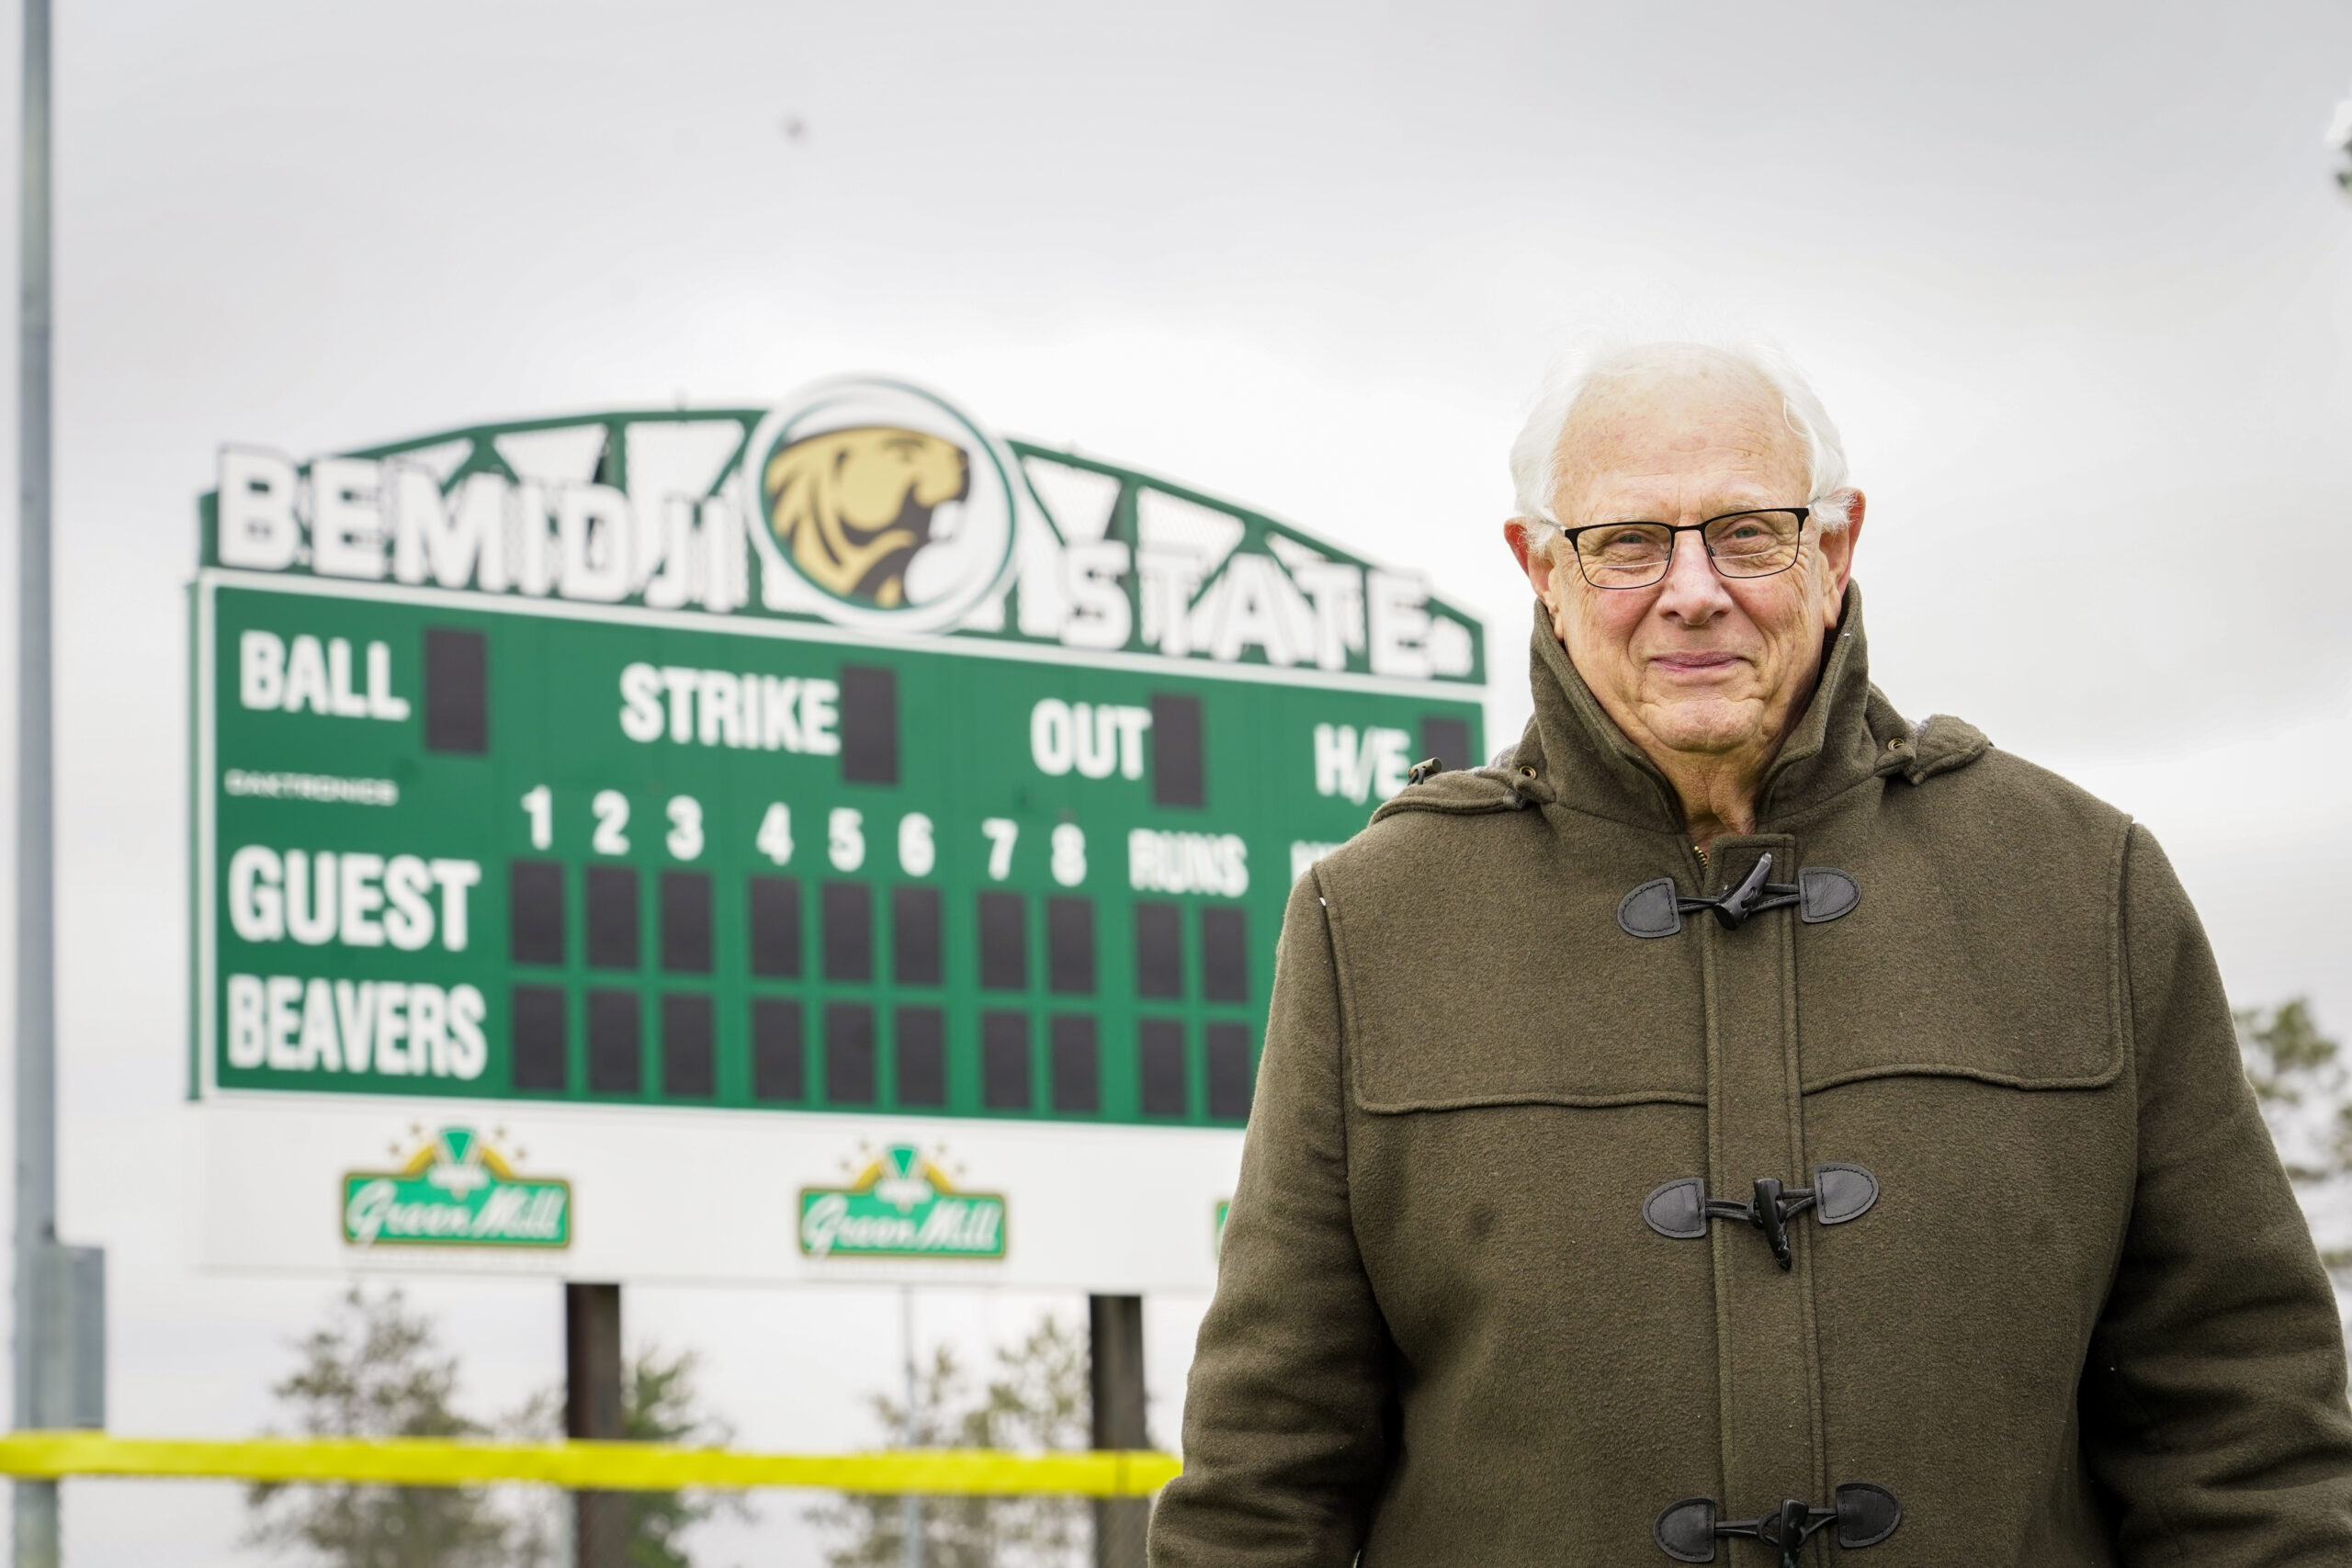 Rich Siegert, a 1967 BSU graduate, has helped make a new, state-of-the-art scoreboard possible for the BSU softball team. (Micah Friez / Bemidji State)